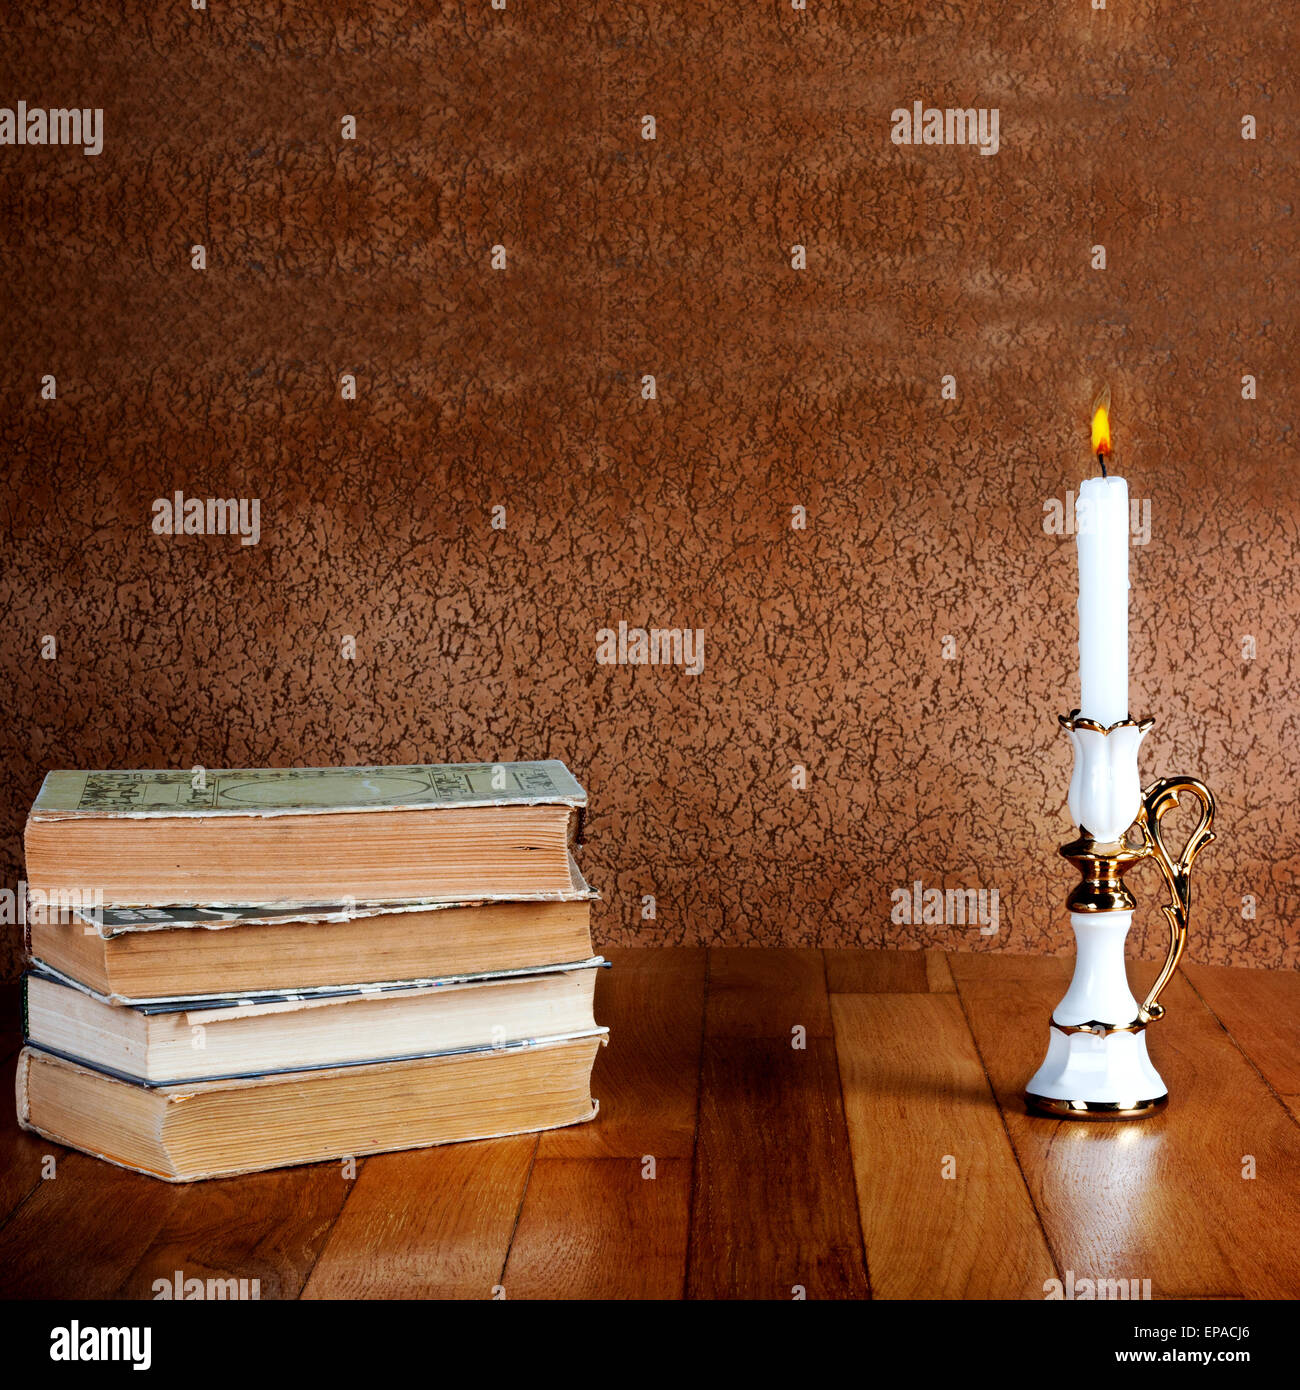 Pila de libros antiguos con candelabro y velas encendidas sobre la mesa de madera Foto de stock